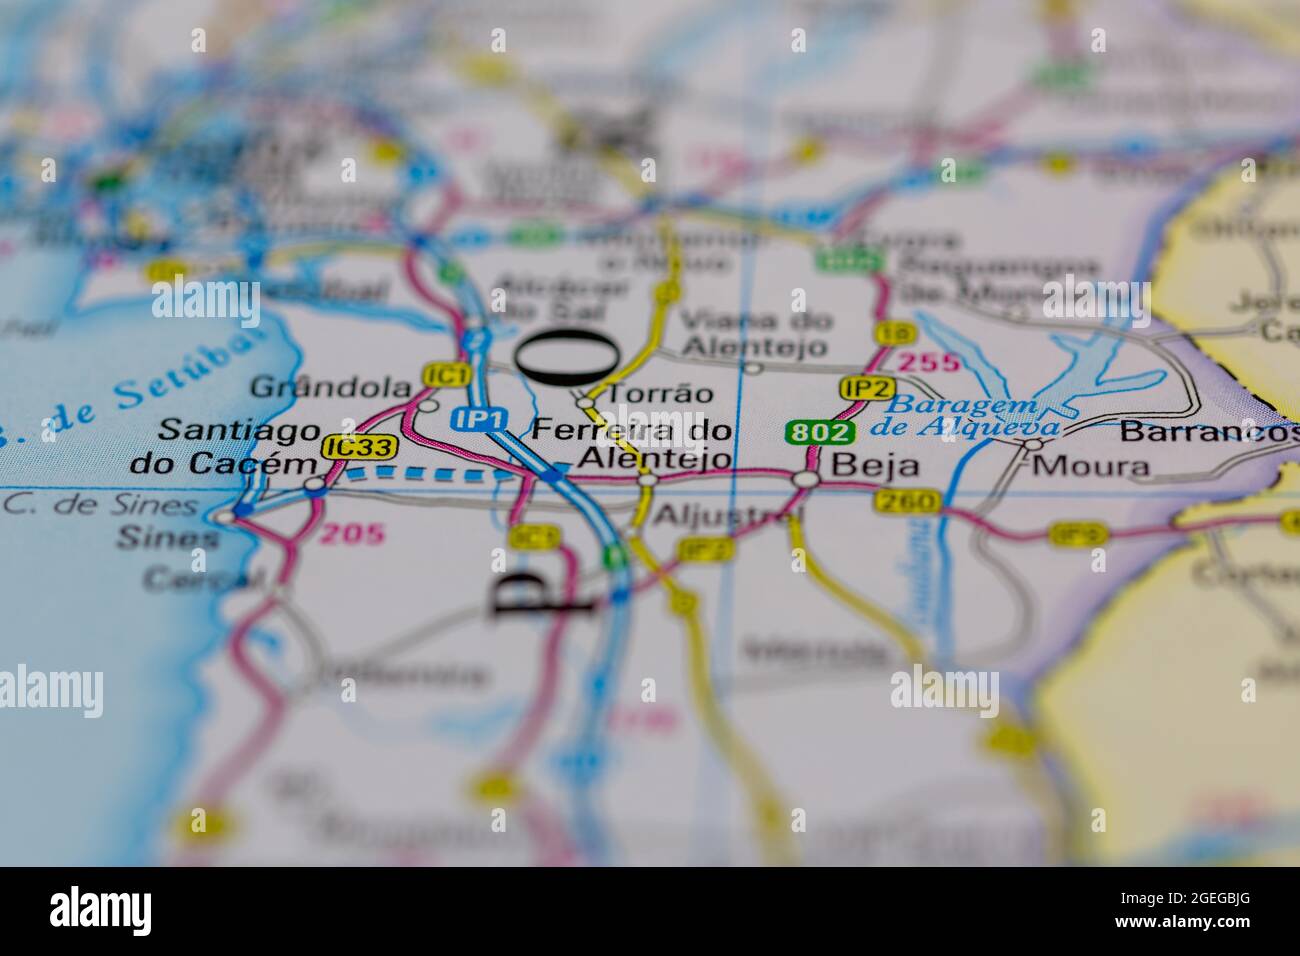 Ferreira do Alentejo Portugal auf einer Straßenkarte oder Geographie-Karte angezeigt Stockfoto